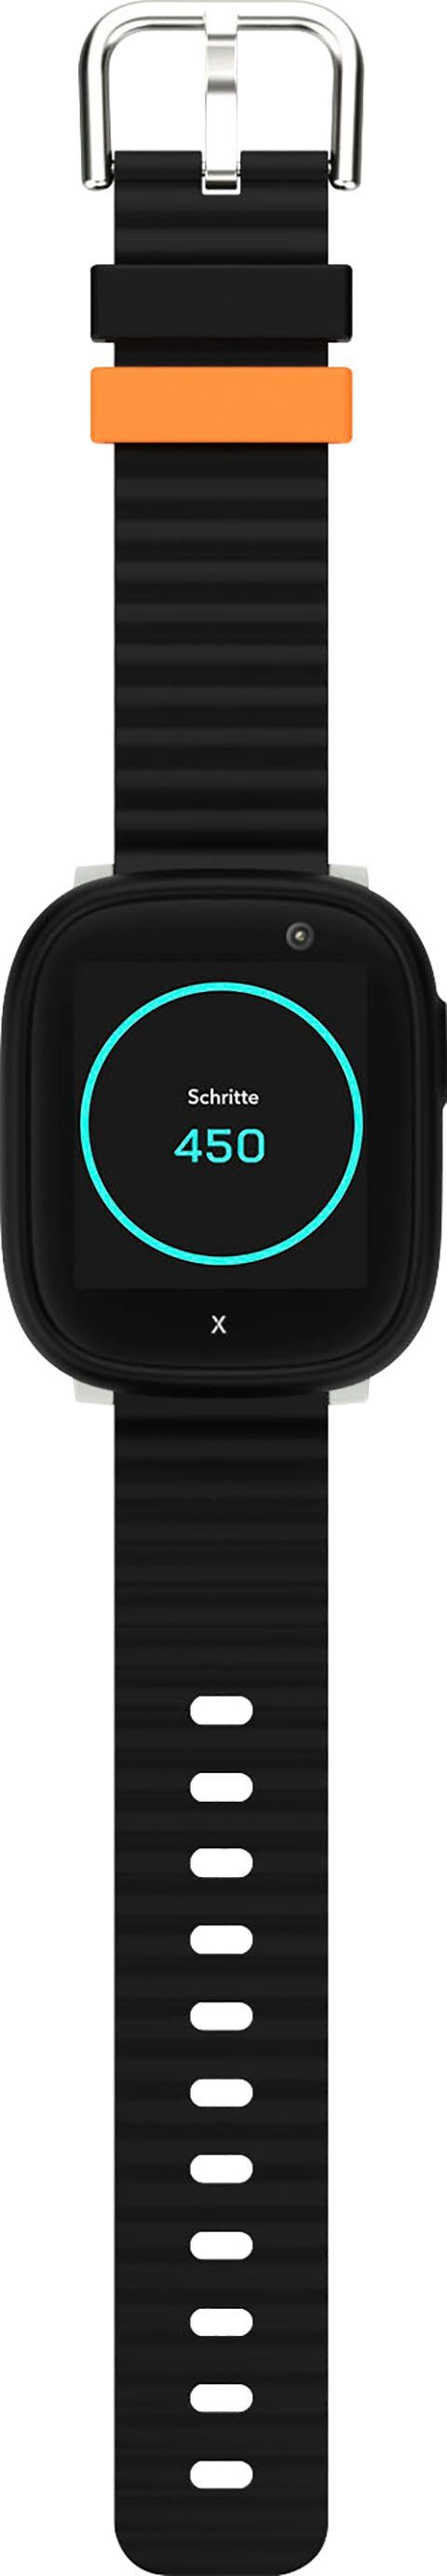 Kinder- (3,86 X6Play Android Zoll, Xplora Smartwatch cm/1,52 schwarz/schwarz Wear)